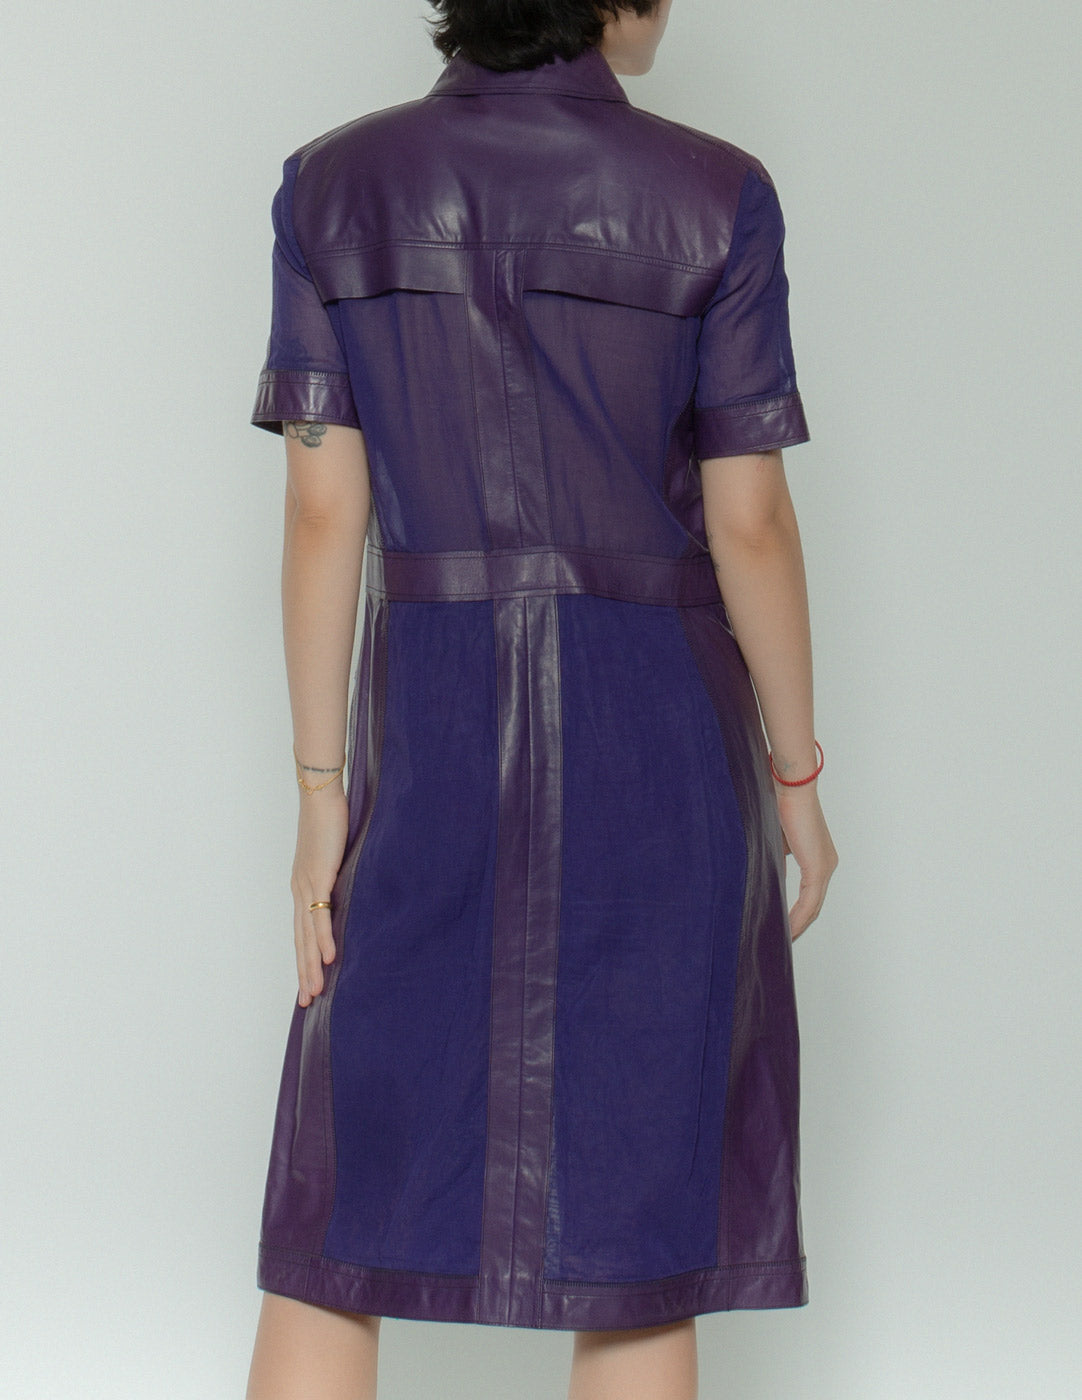 Bottega Veneta purple leather mesh dress back detail